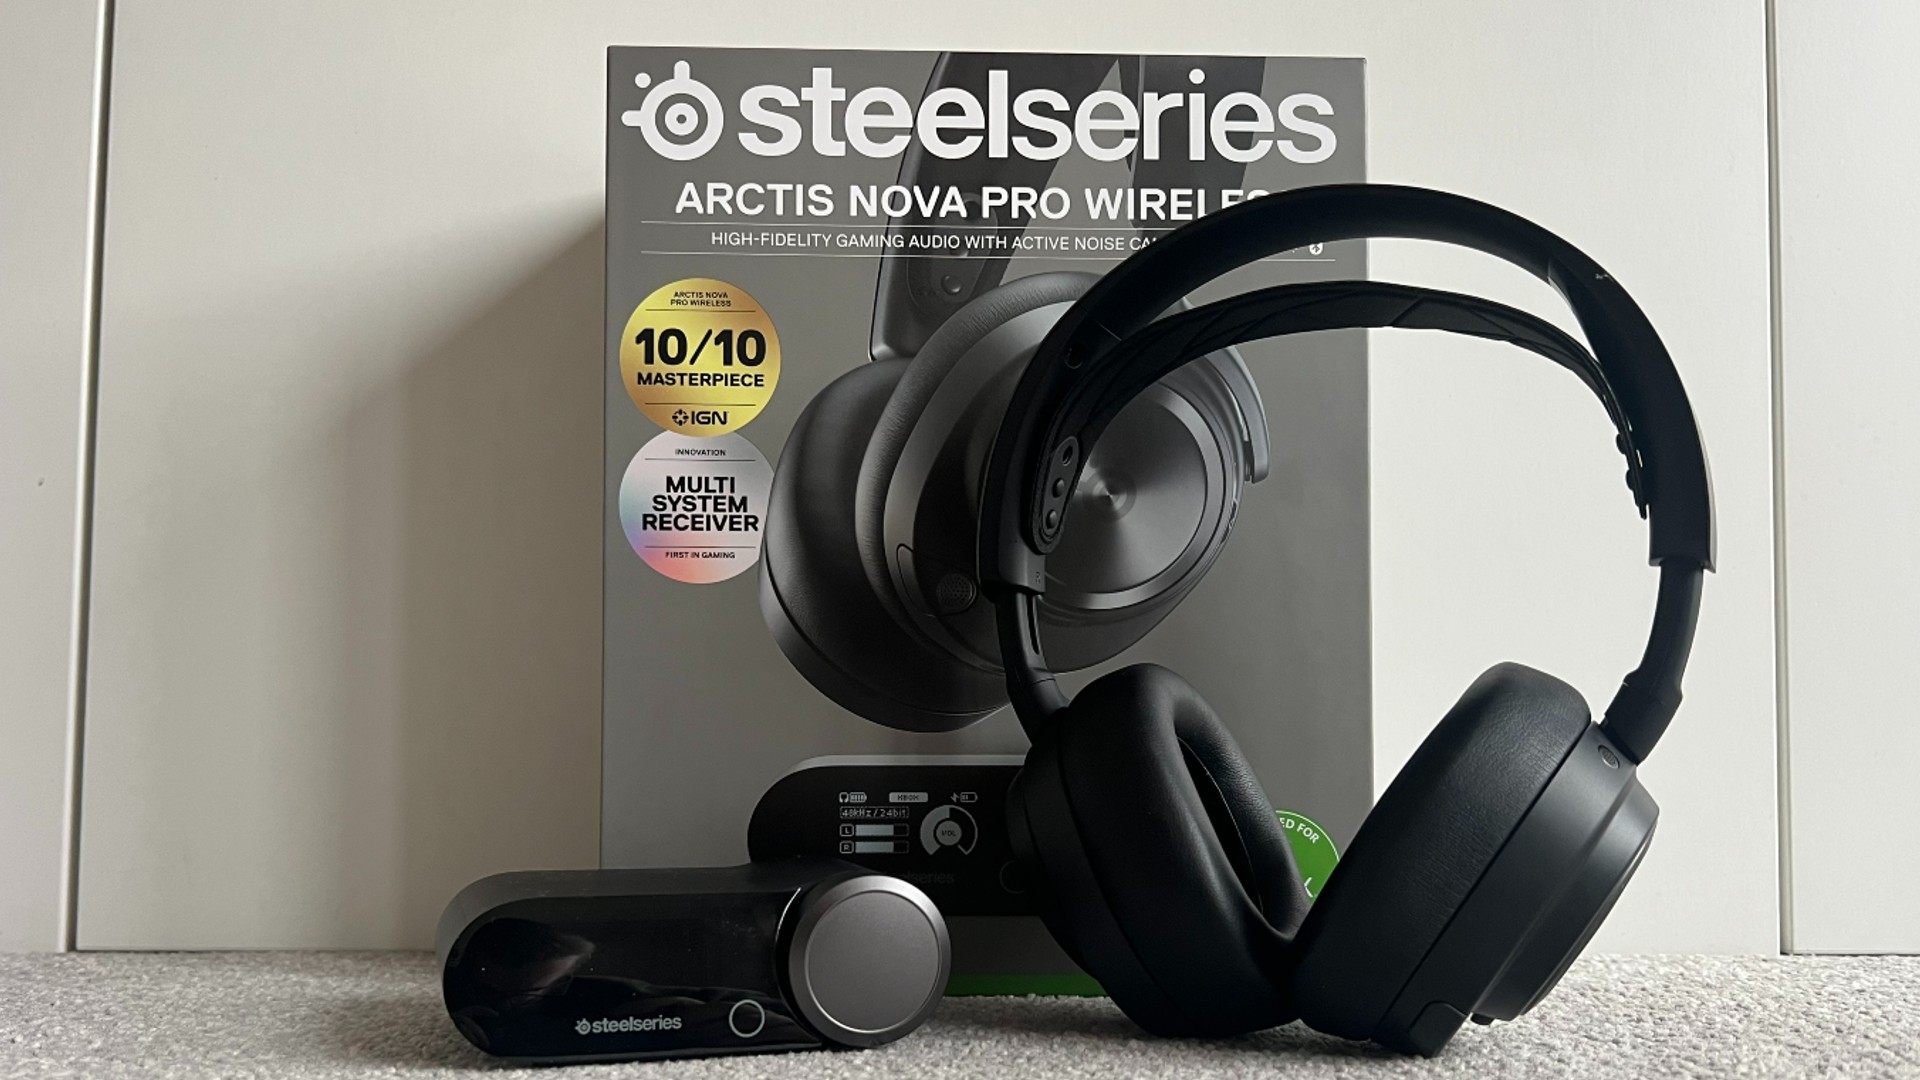 SteelSeries Arctis Nova Pro Wireless review: The new premium